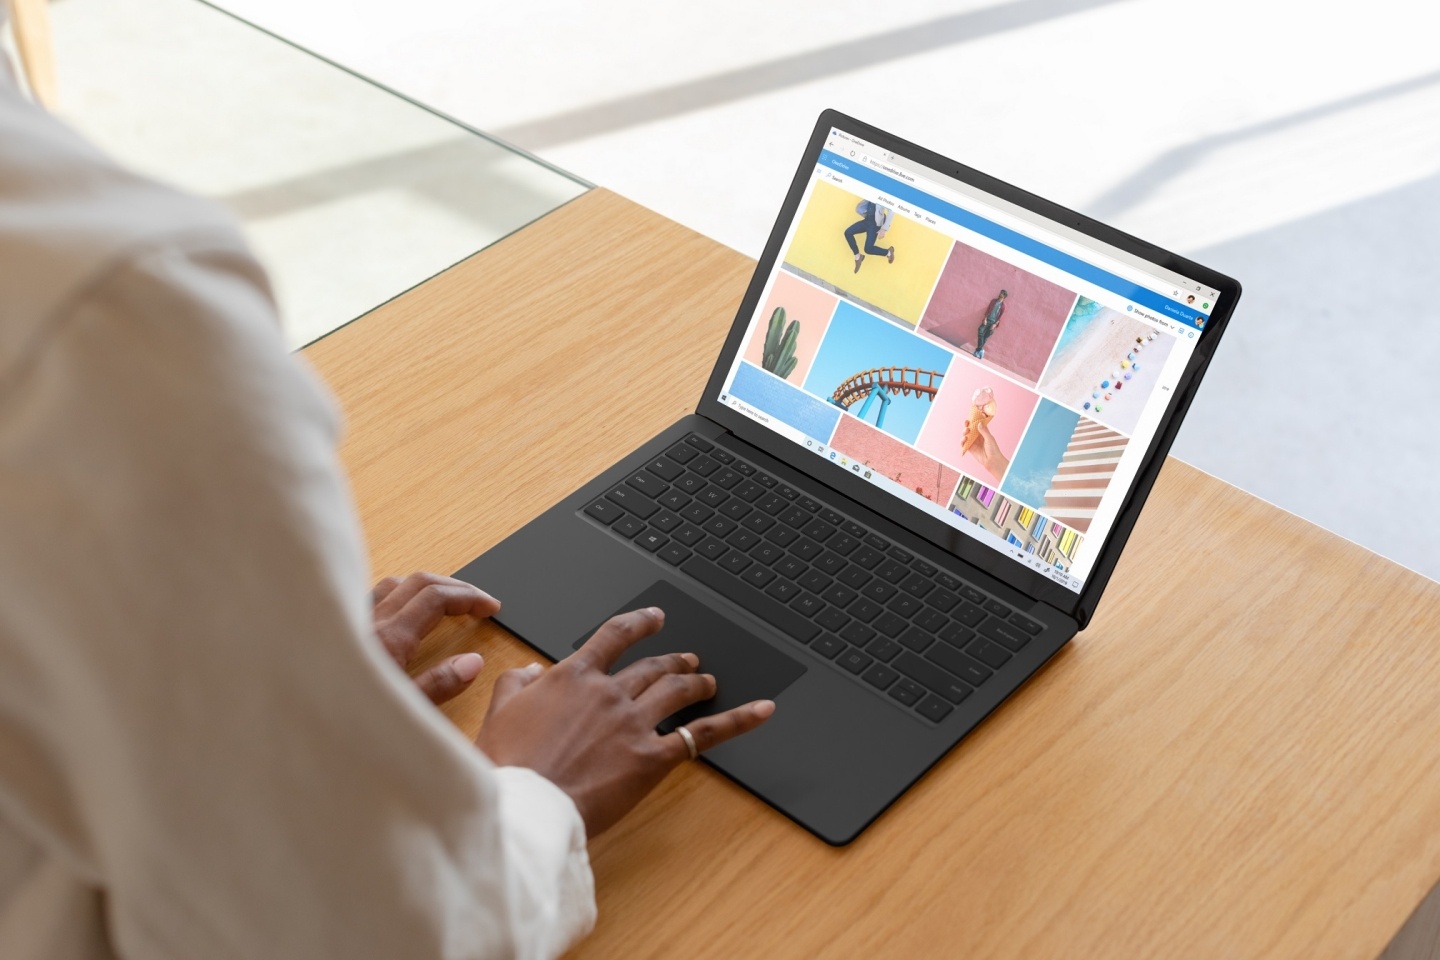 微軟 Surface Laptop 3 台灣上市！搭載最新第十代 Intel Core 處理器 效能、續航力升級 還有新色砂岩金、墨黑